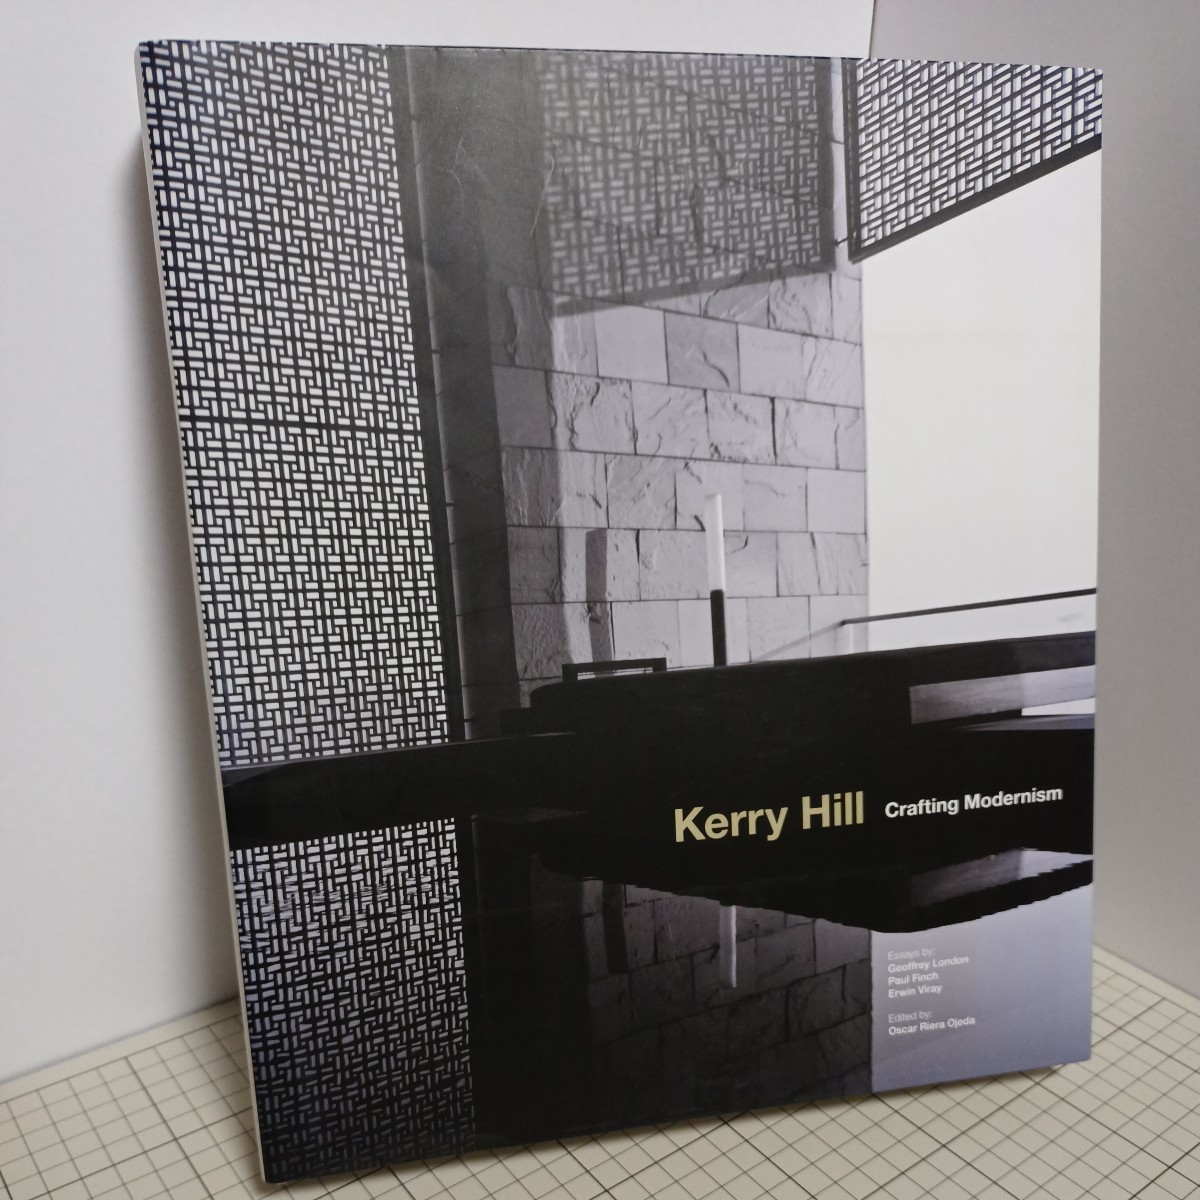 【洋書英語版】送料無料(匿名配送) Kerry Hill Crafting Modernism ケリー・ヒル ☆★☆☆